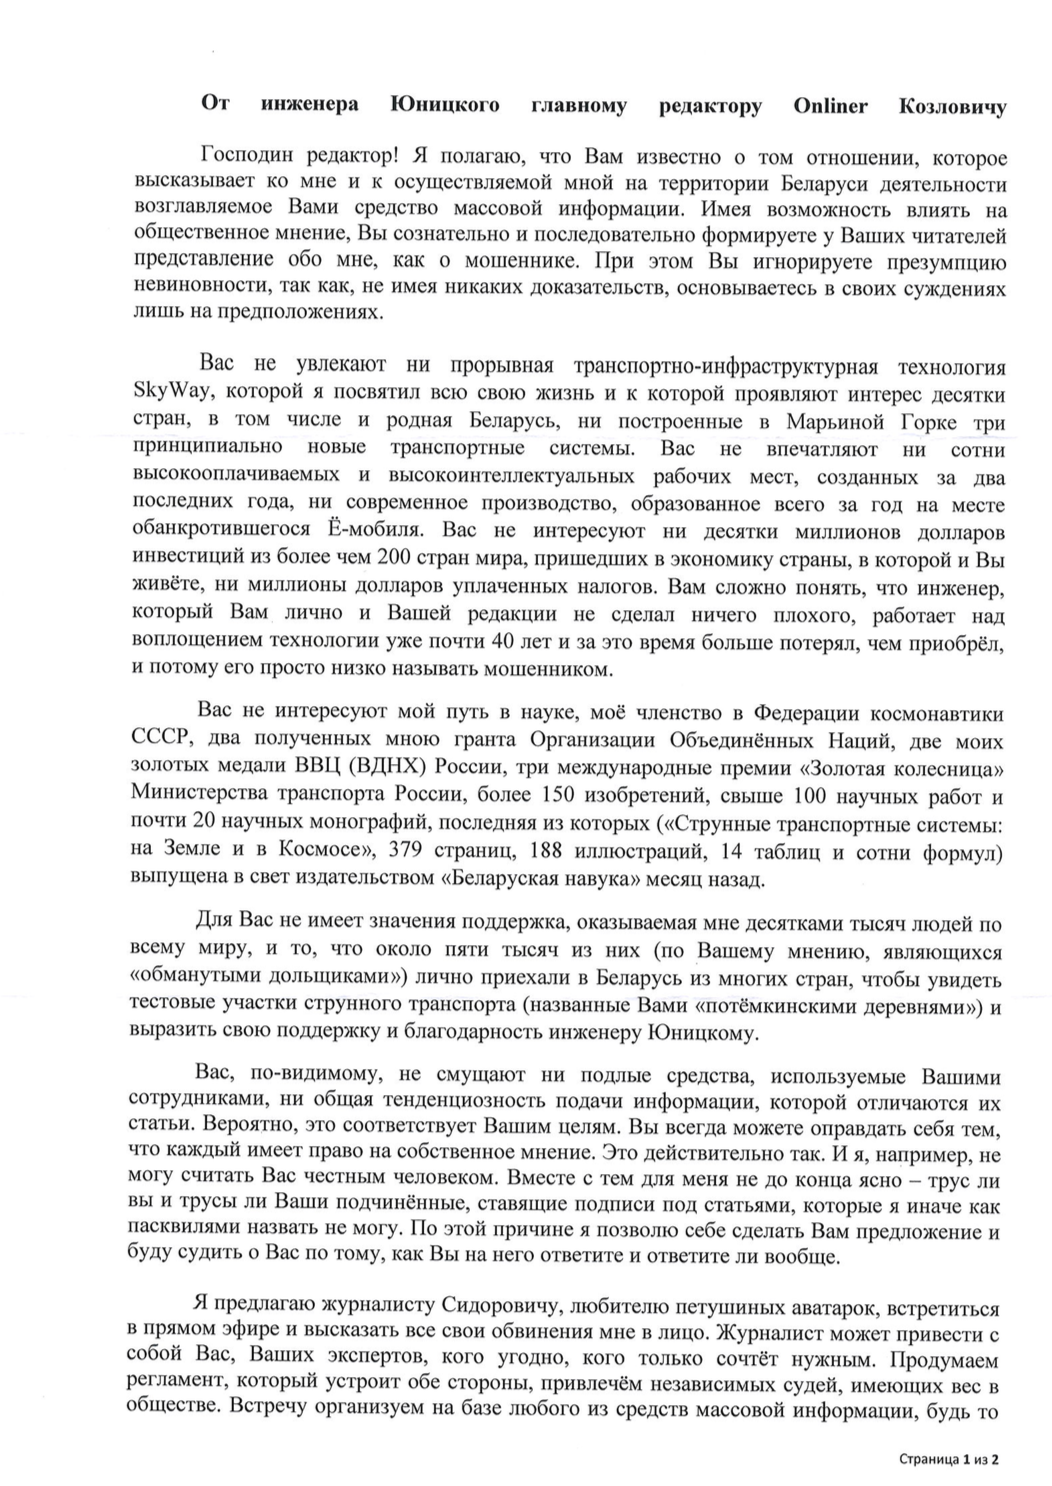 Мошенник оценил в 240 000 рублей несуществующую должность в прокуратуре 